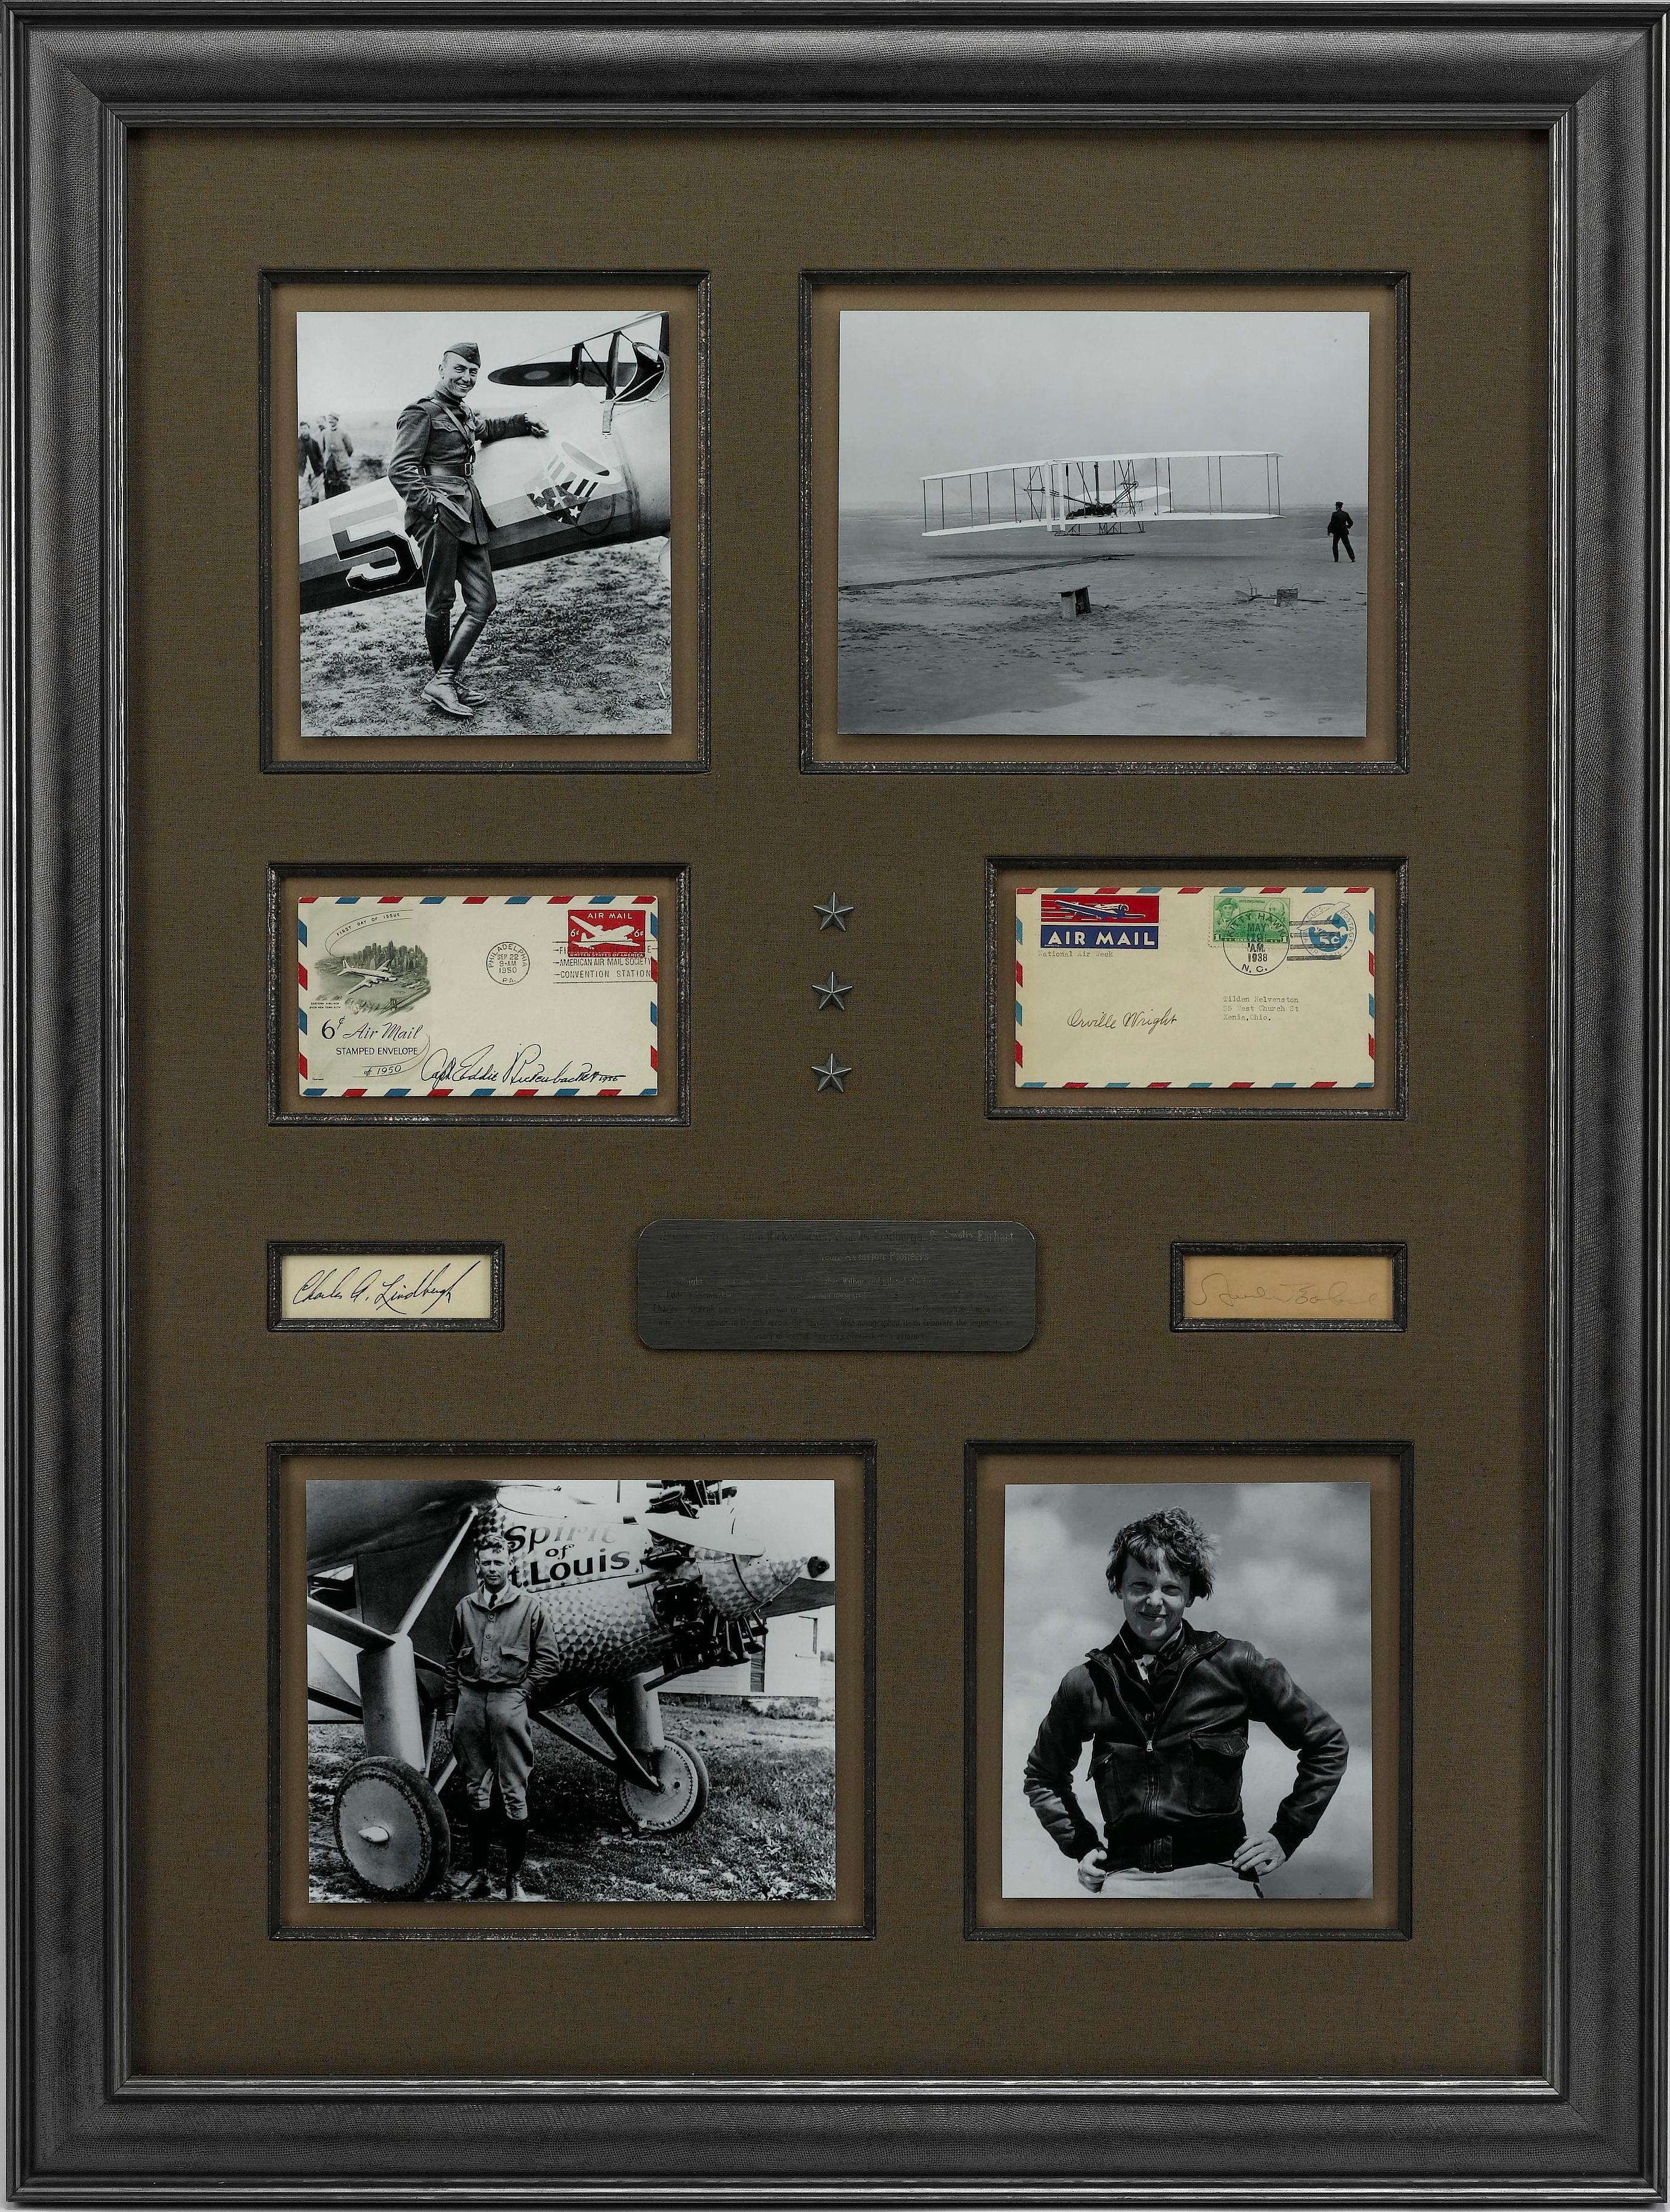 Ce collage de signatures d'aviation célèbre quatre grands pionniers américains du vol : Orville Wright, Eddie Rickenbacker, Charles Lindbergh et Amelia Earhart. Orville Wright, avec son frère Wilber, a inventé l'avion et a été le pilote du premier